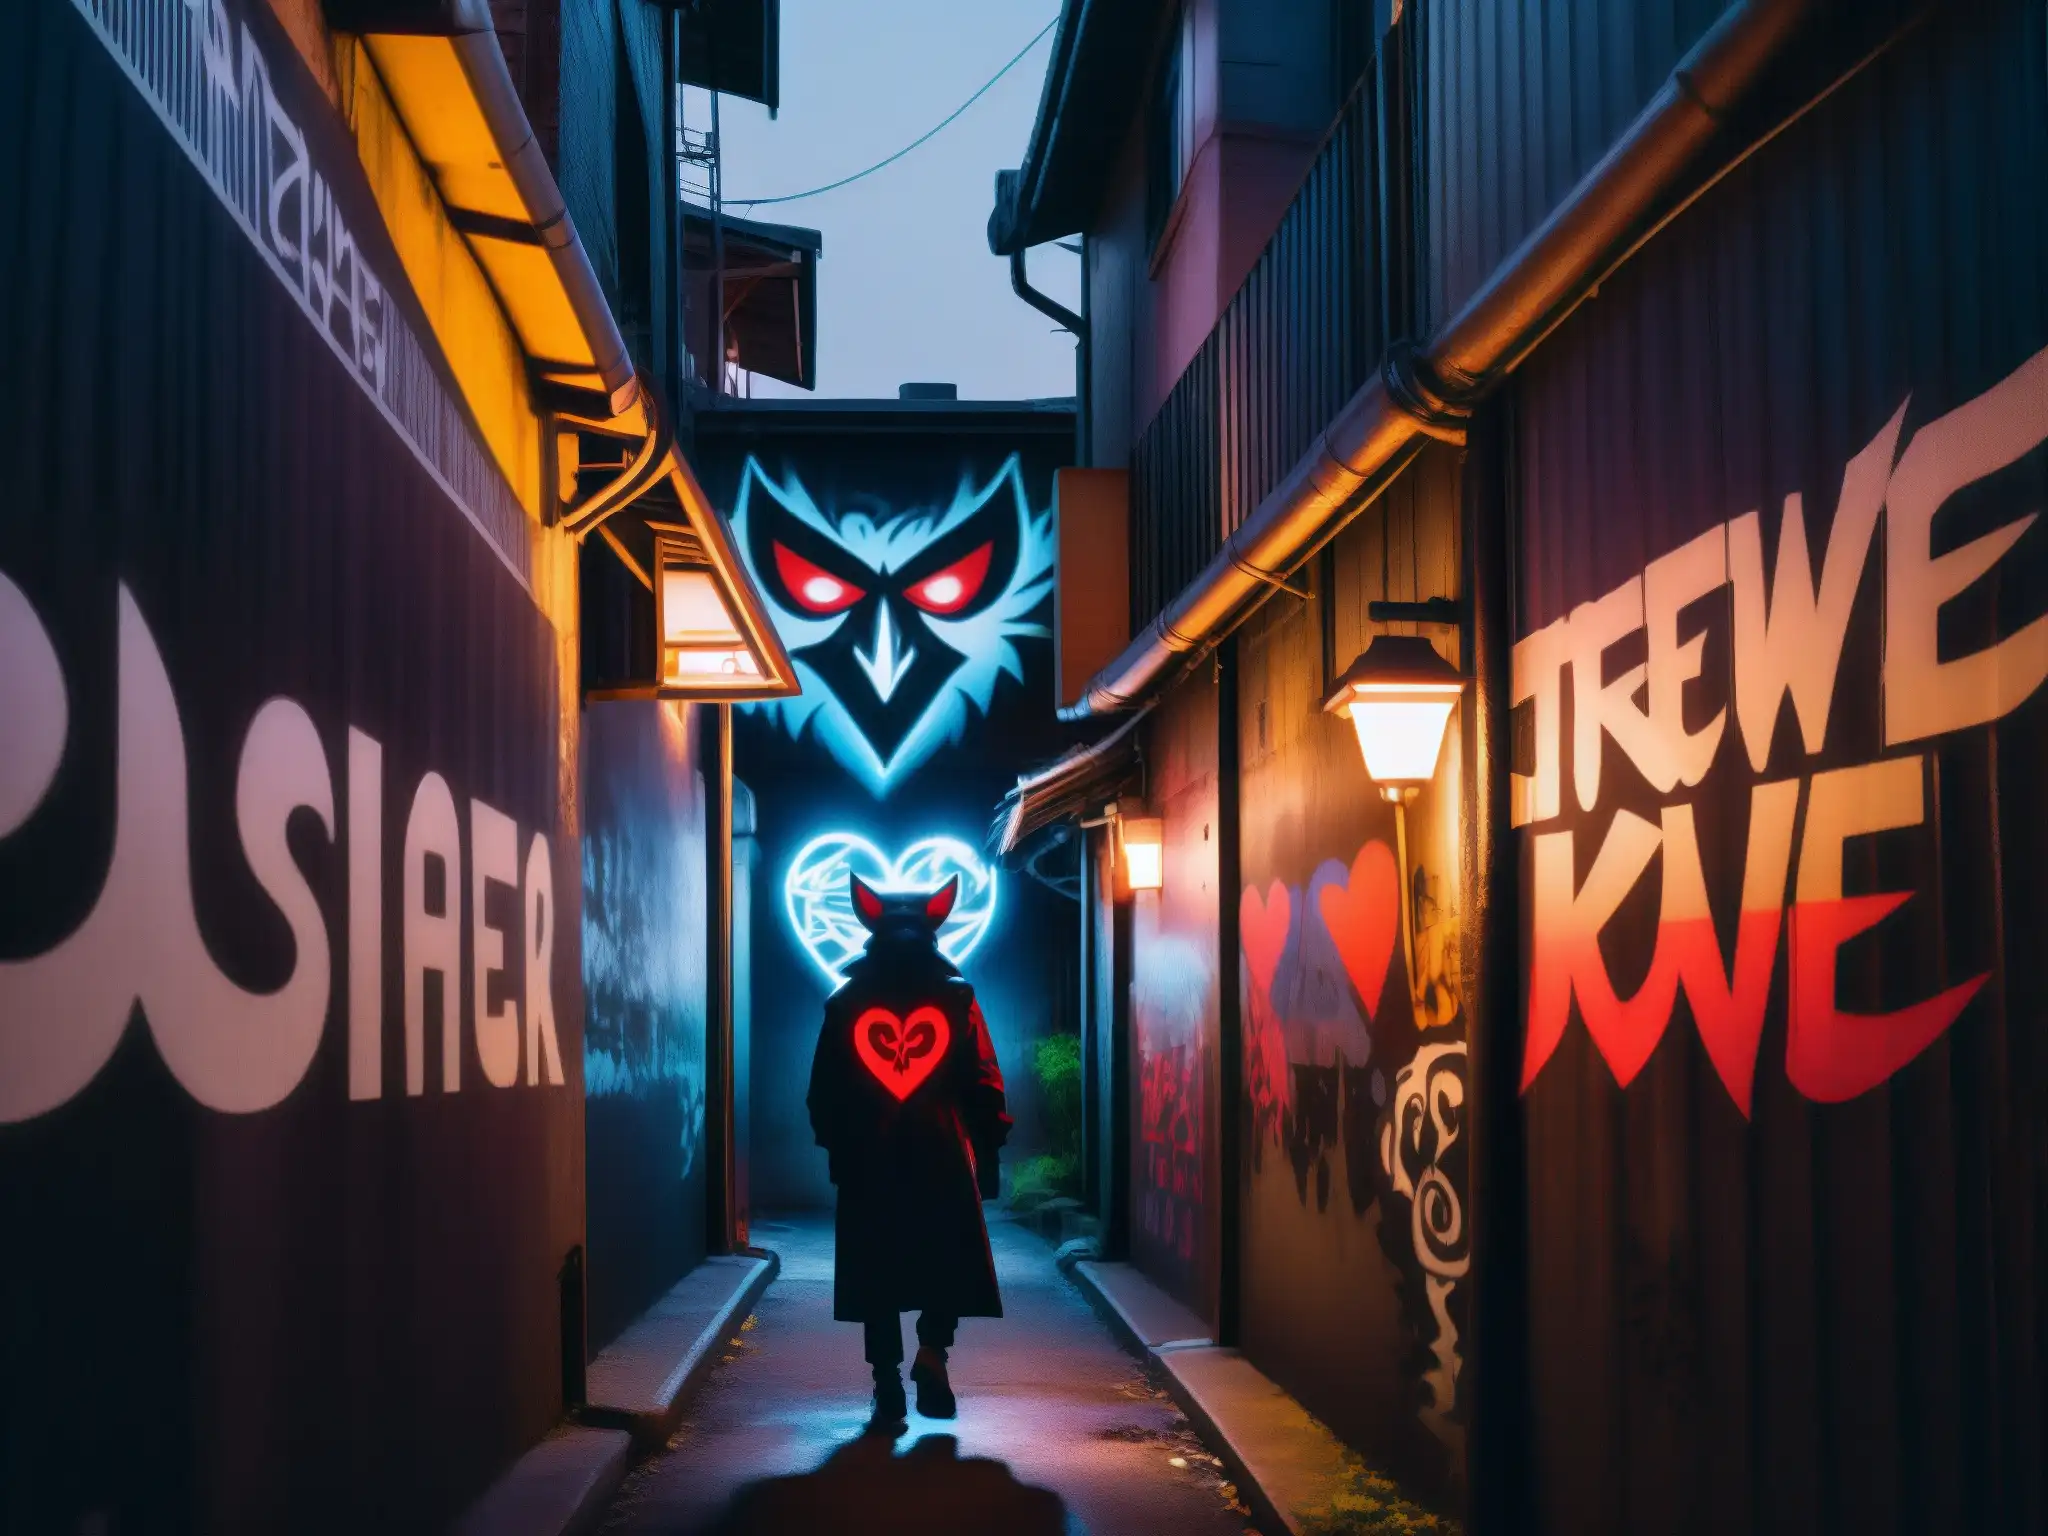 Un oscuro callejón urbano con grafitis y luces titilantes